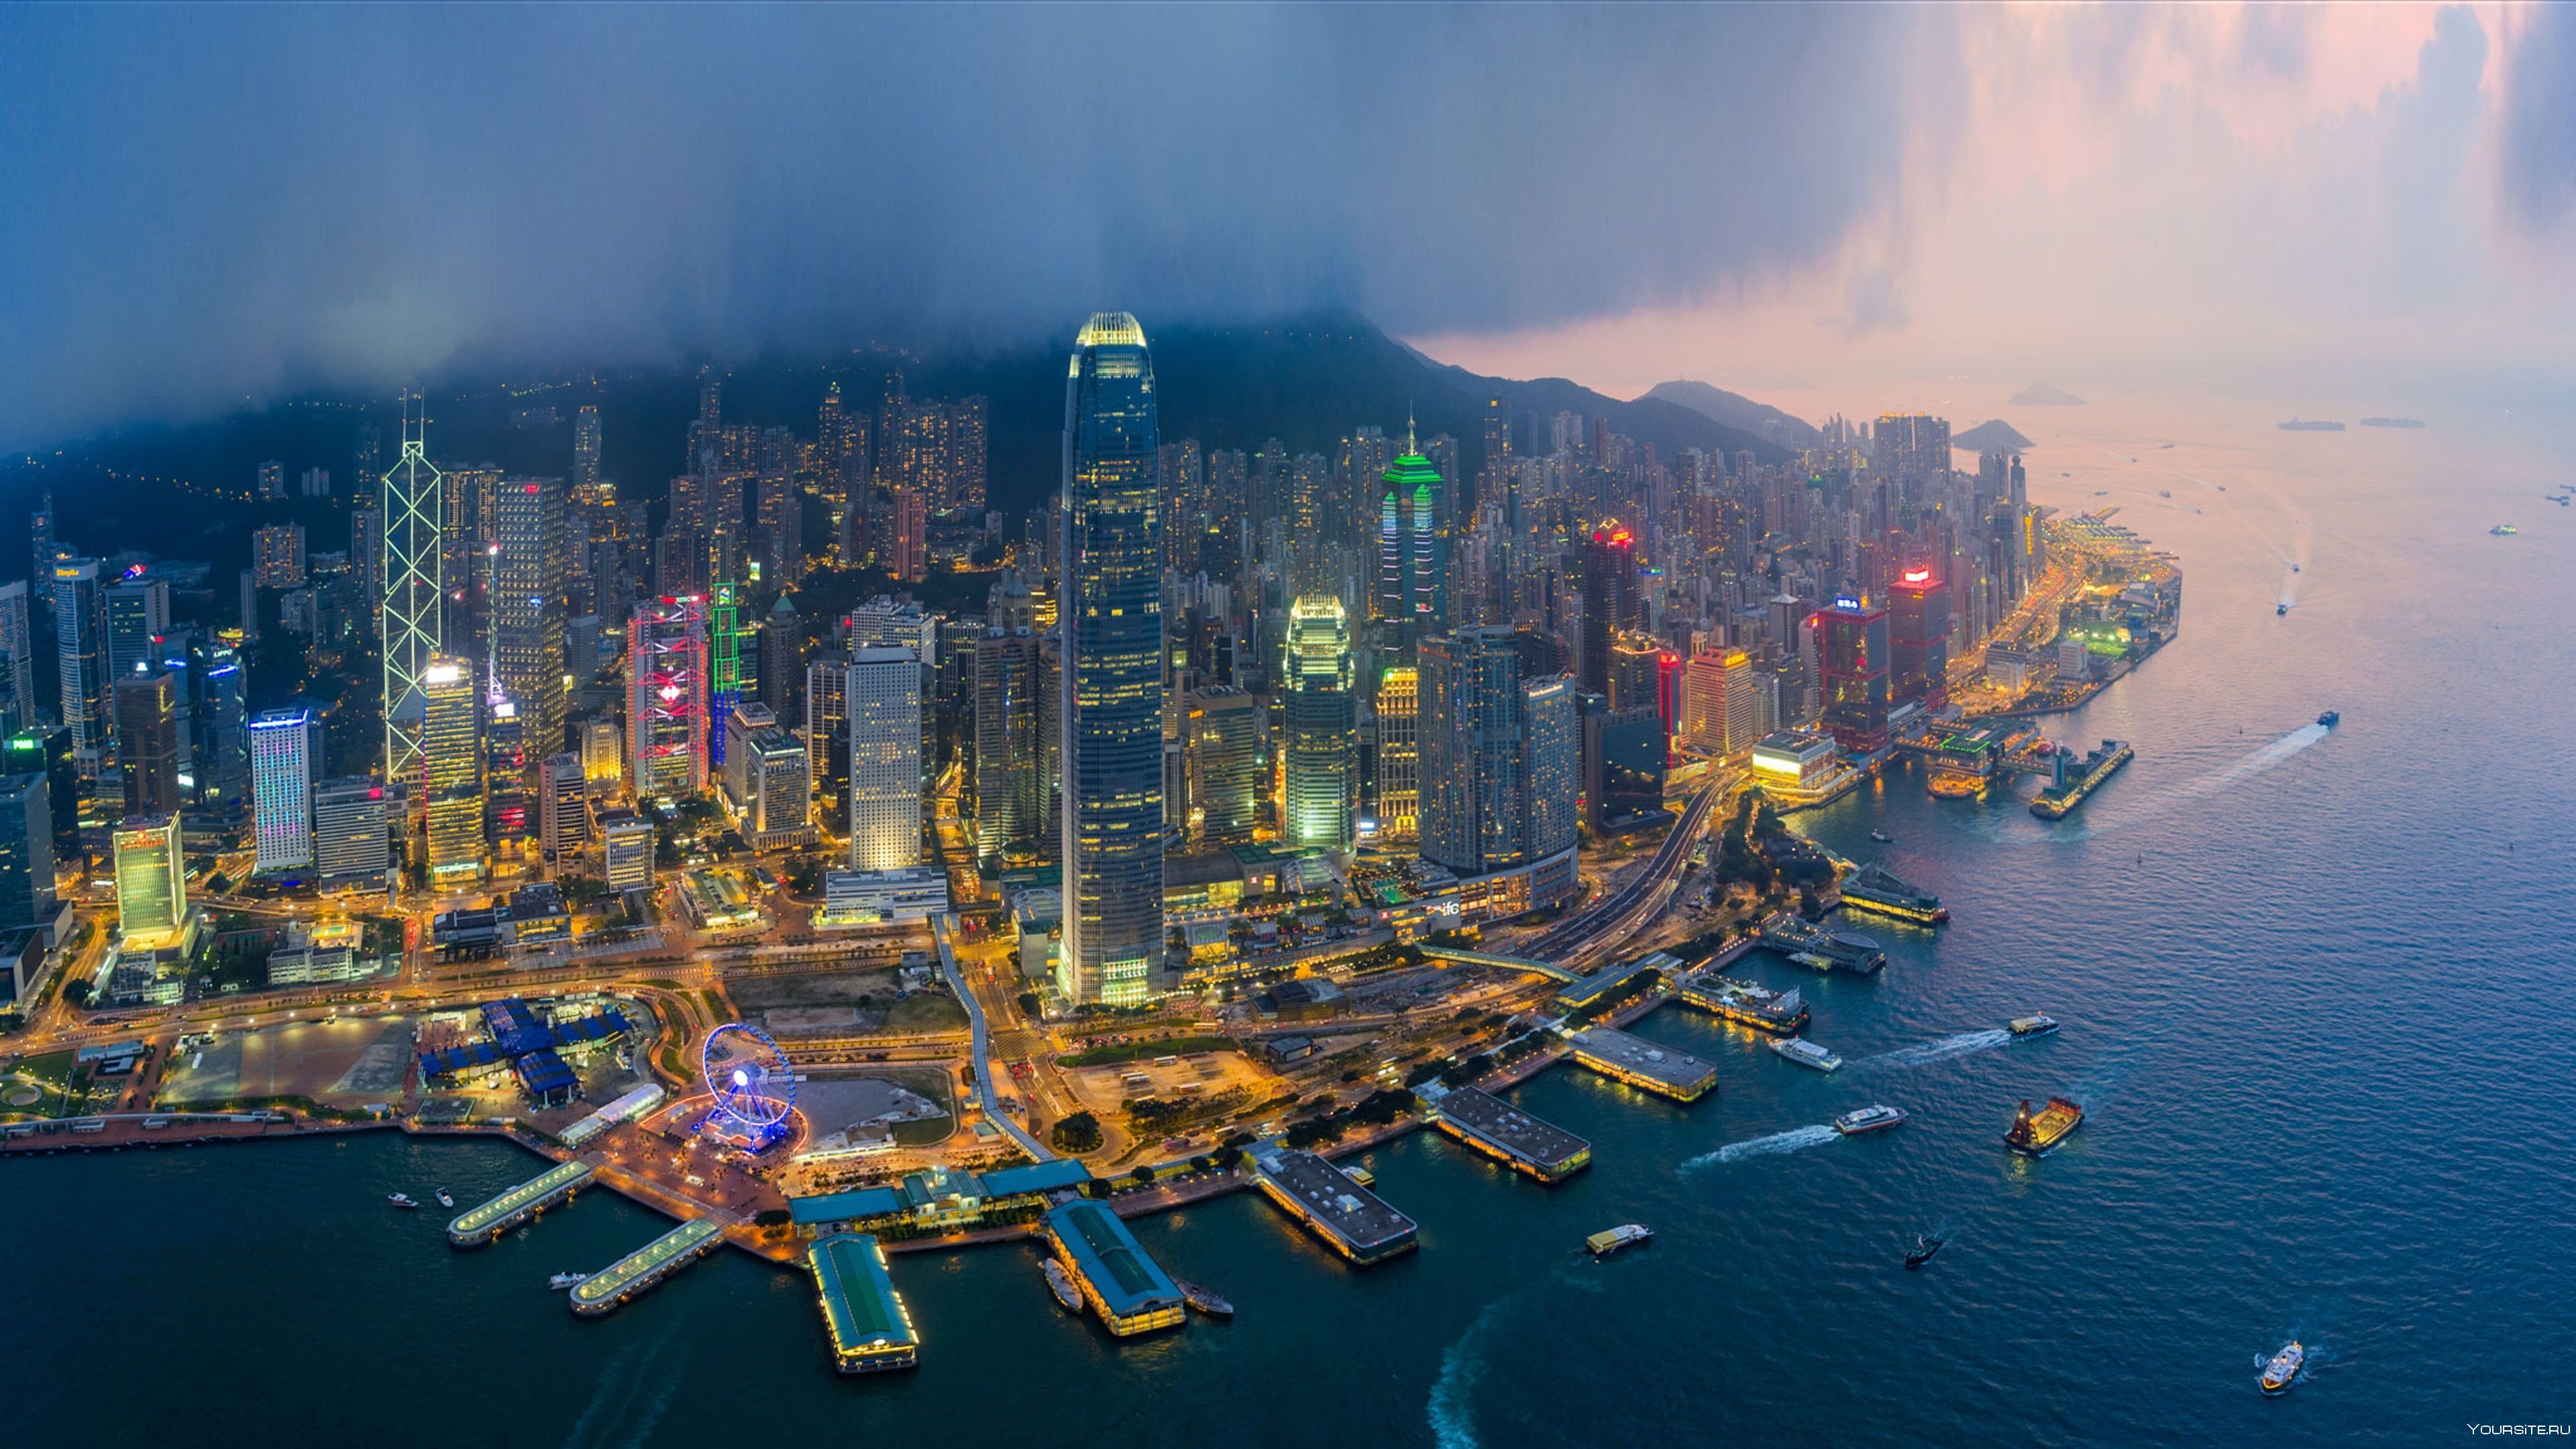 Companies hong kong. Китай Гонг Конг. Ночной Гонг Конг. Гонг Конг остров. Гонг Конг небоскребы.